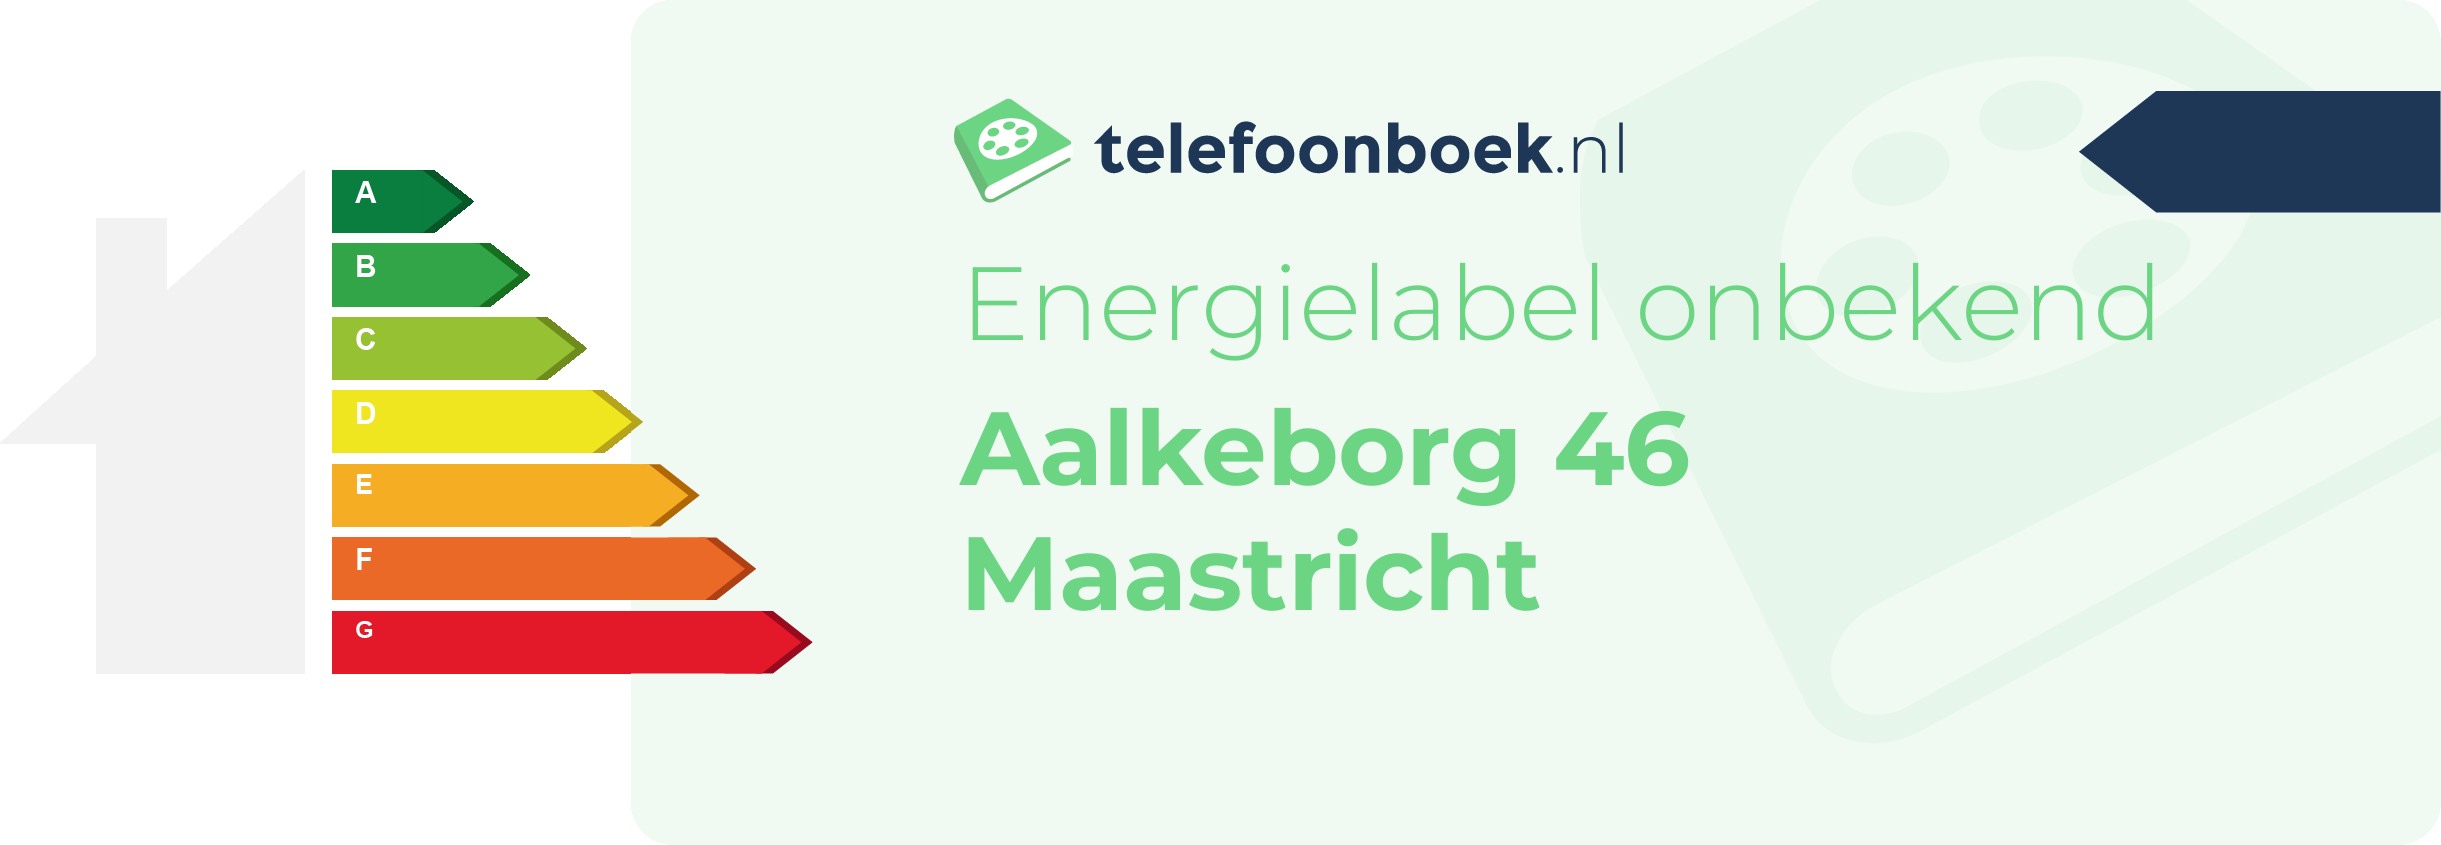 Energielabel Aalkeborg 46 Maastricht